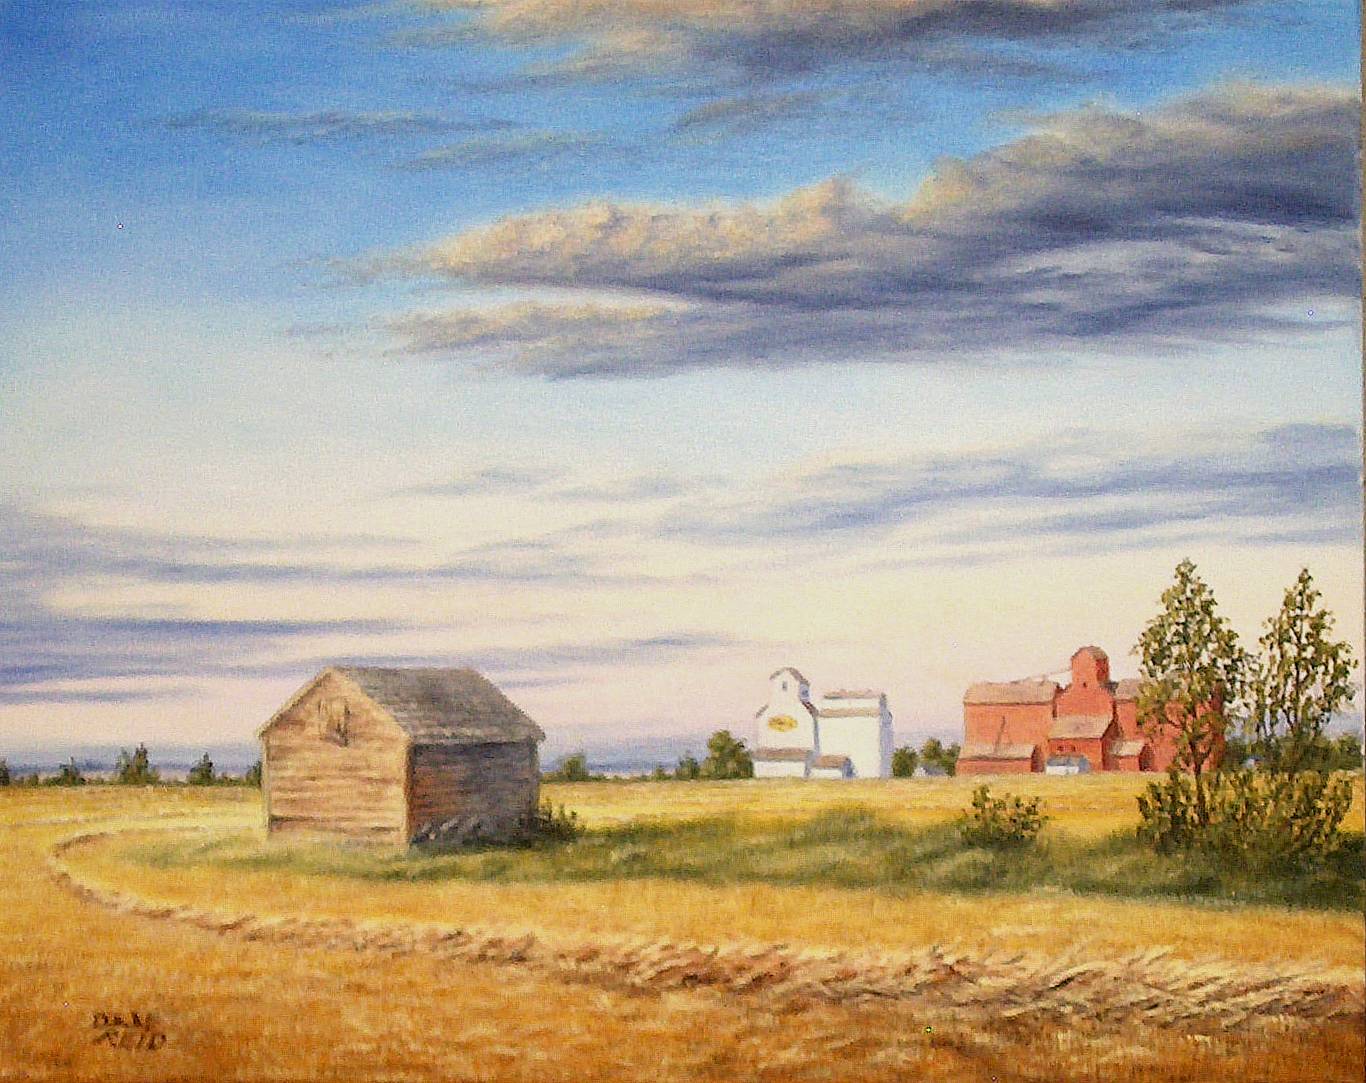 Saskatchewan Memories by Dan Reid